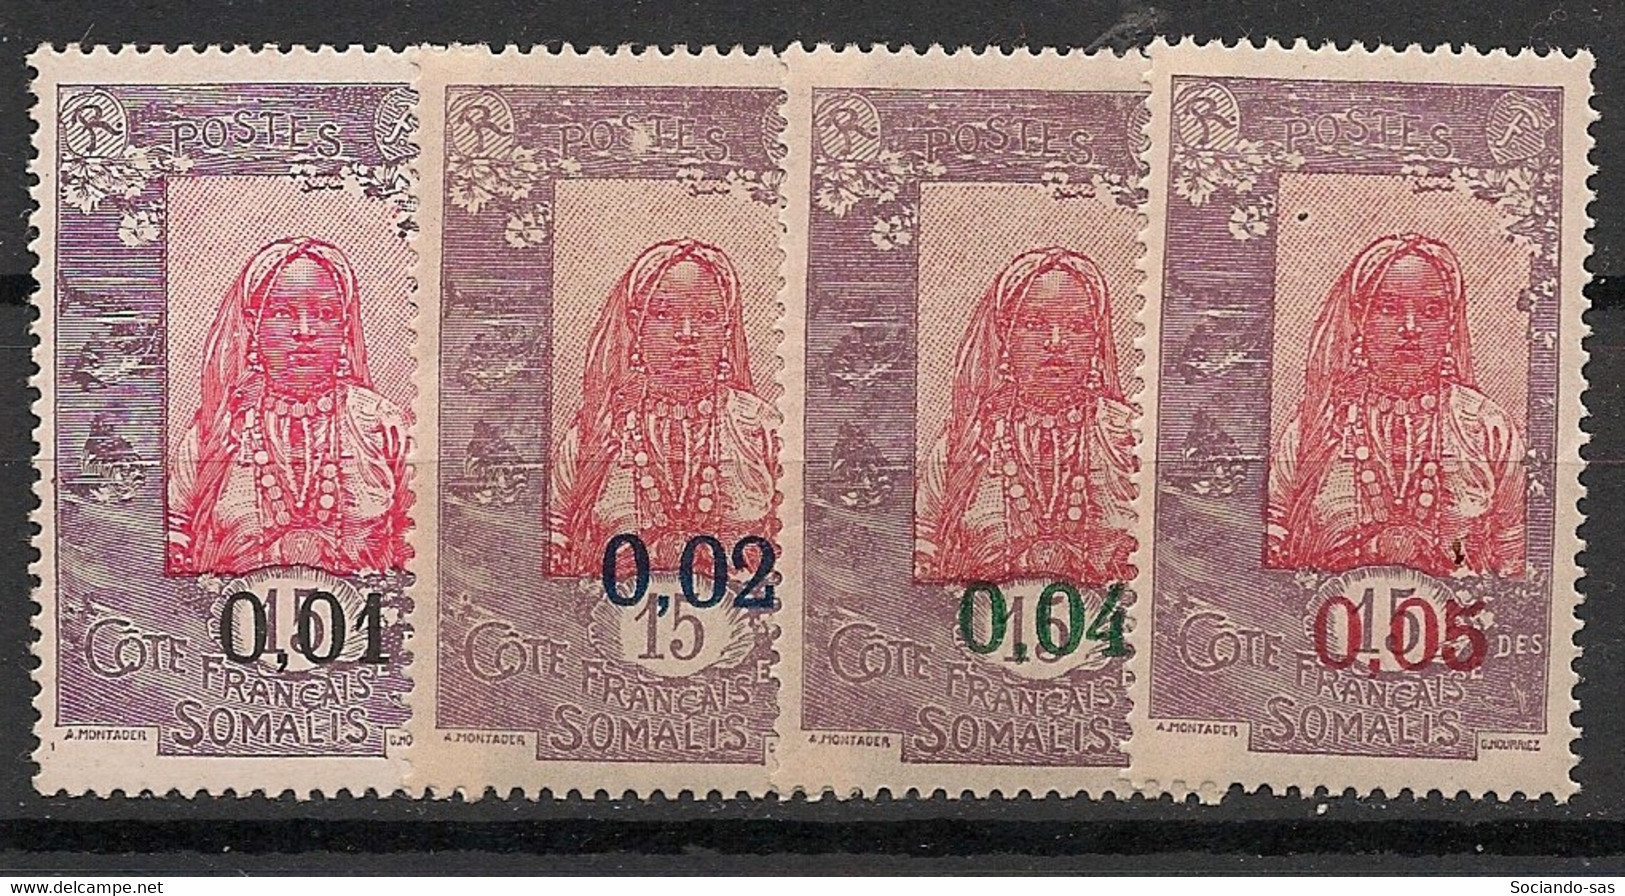 COTE DES SOMALIS - 1922 - N°YT. 108 à 111 - Série Complète - Neuf * / MH VF - Ungebraucht